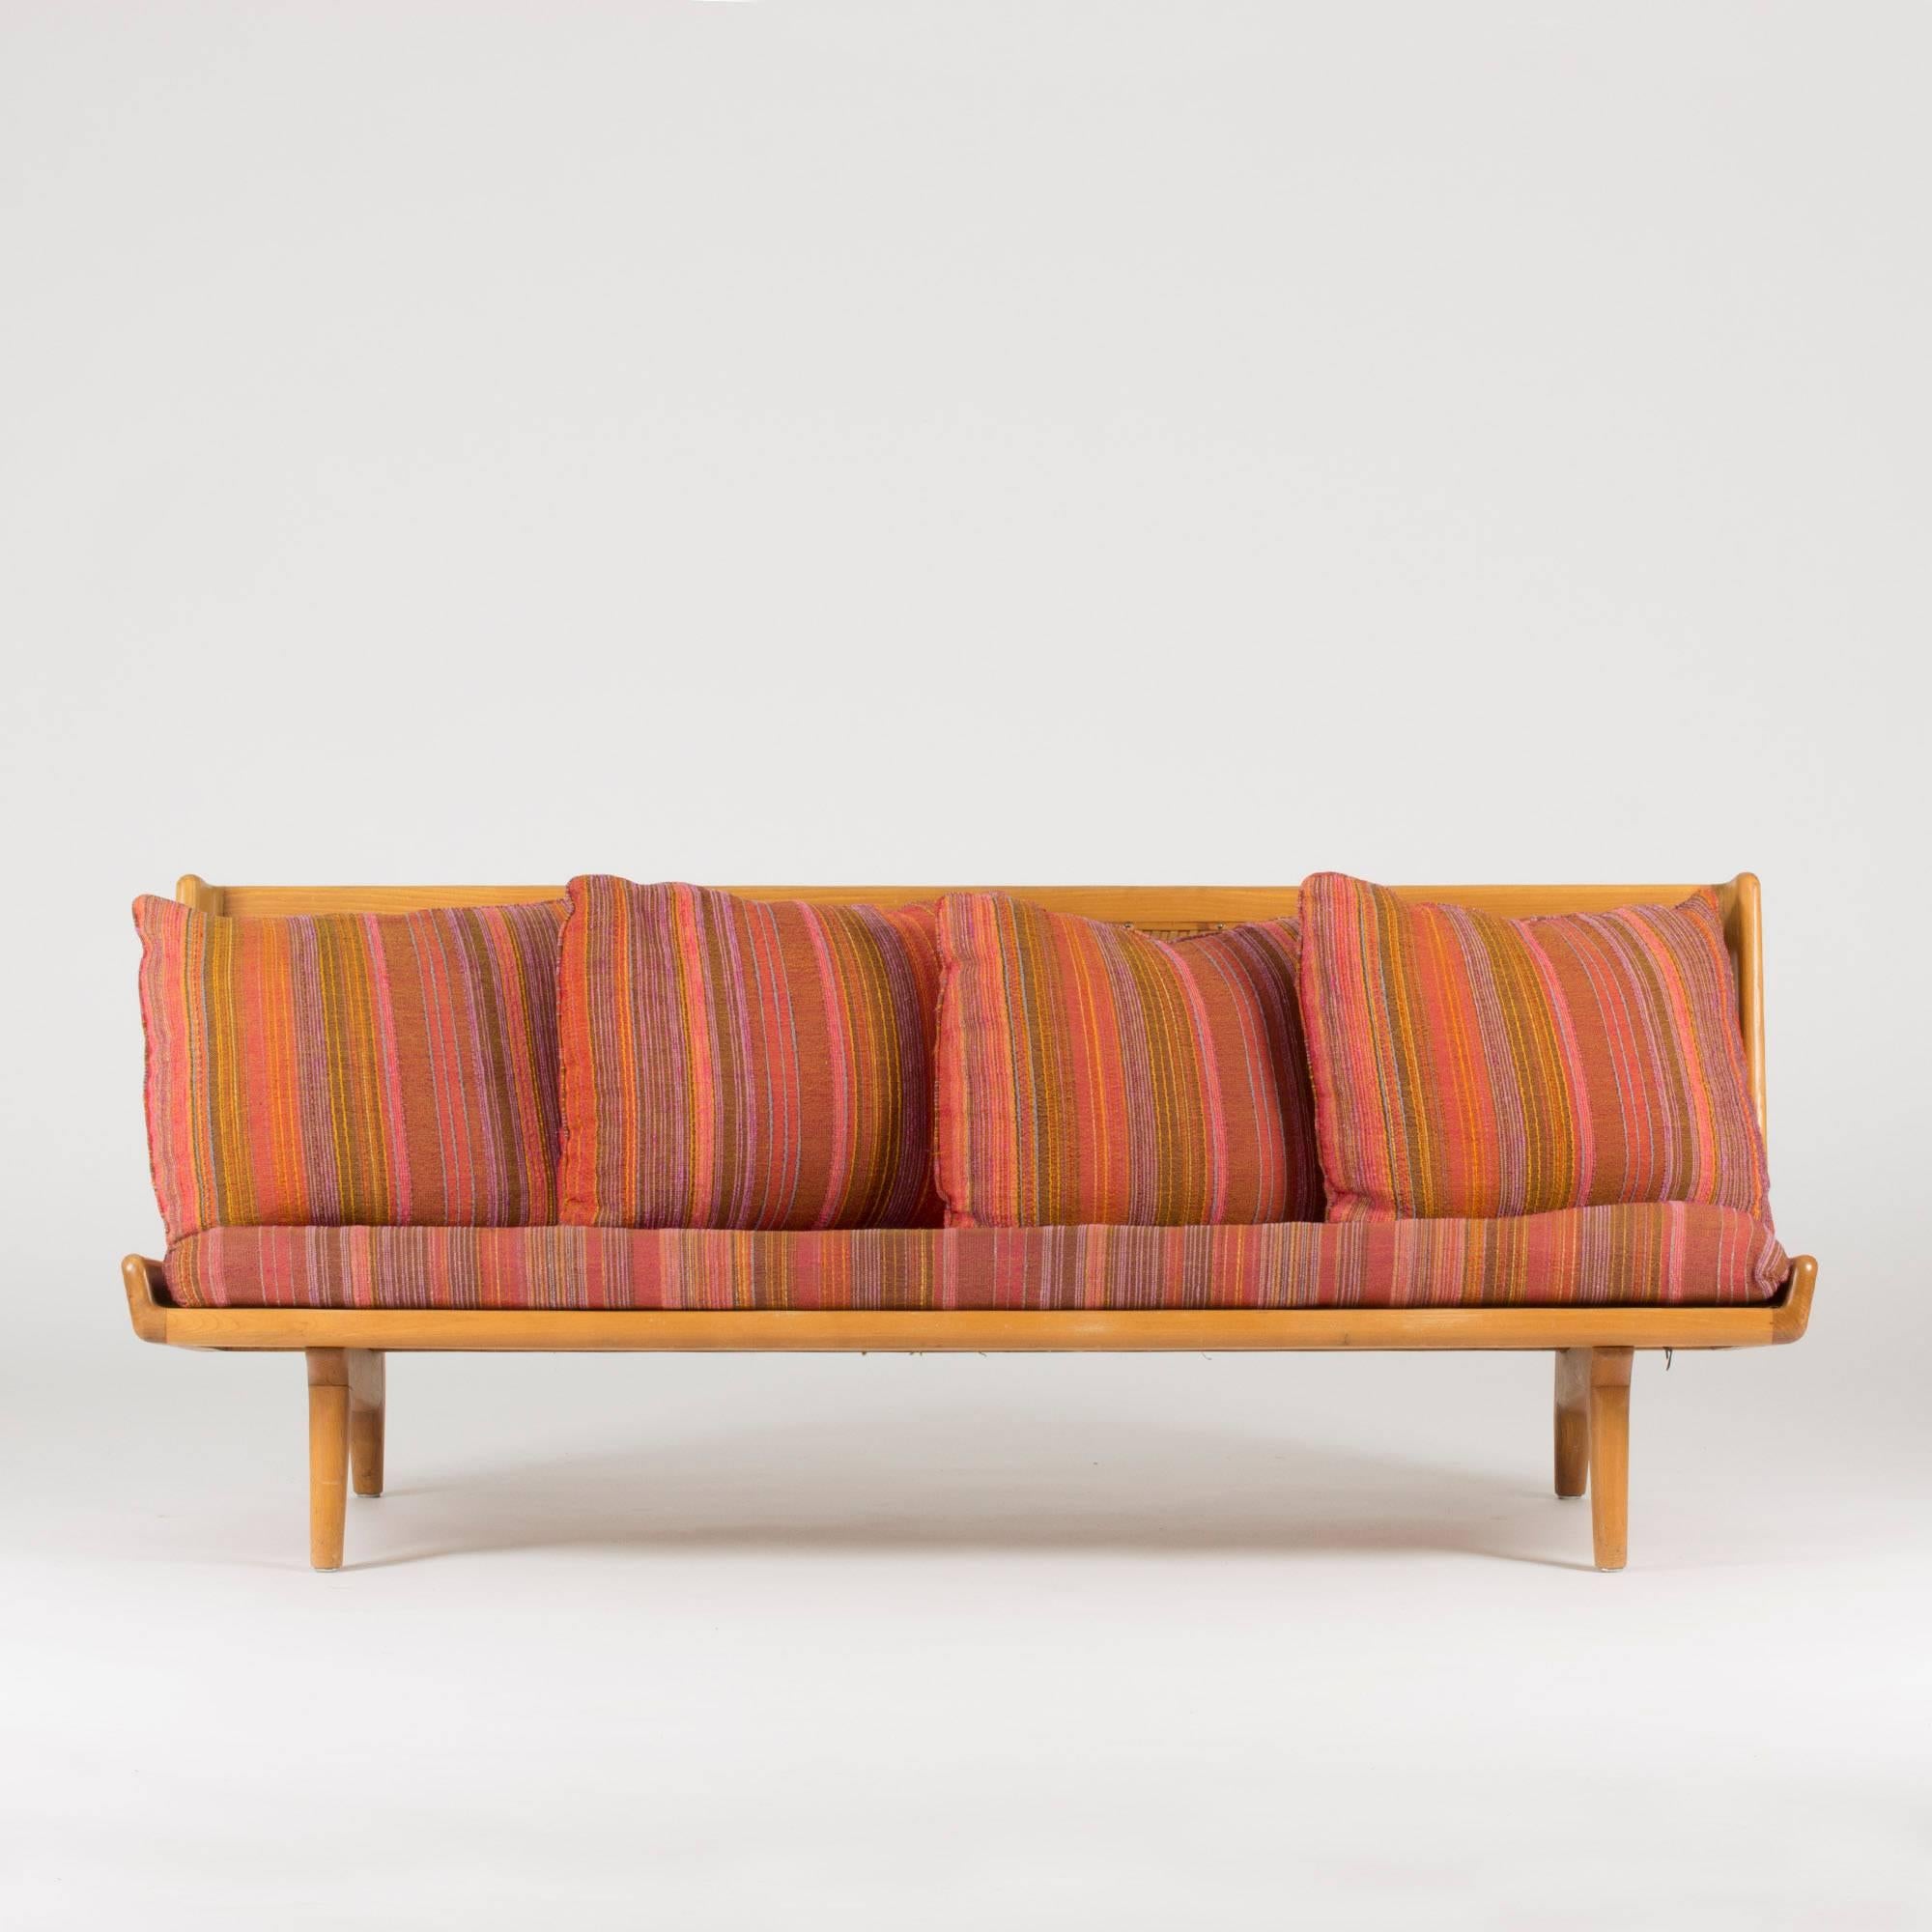 Sofá de Gustaf Hiort af Ornäs, de haya con detalles escultóricos. El asombroso respaldo de cincha de cuero hace de este sofá una auténtica joya de salón. Almohadas y asiento con bonito tejido de lana original. Pequeñas reparaciones en la cincha de